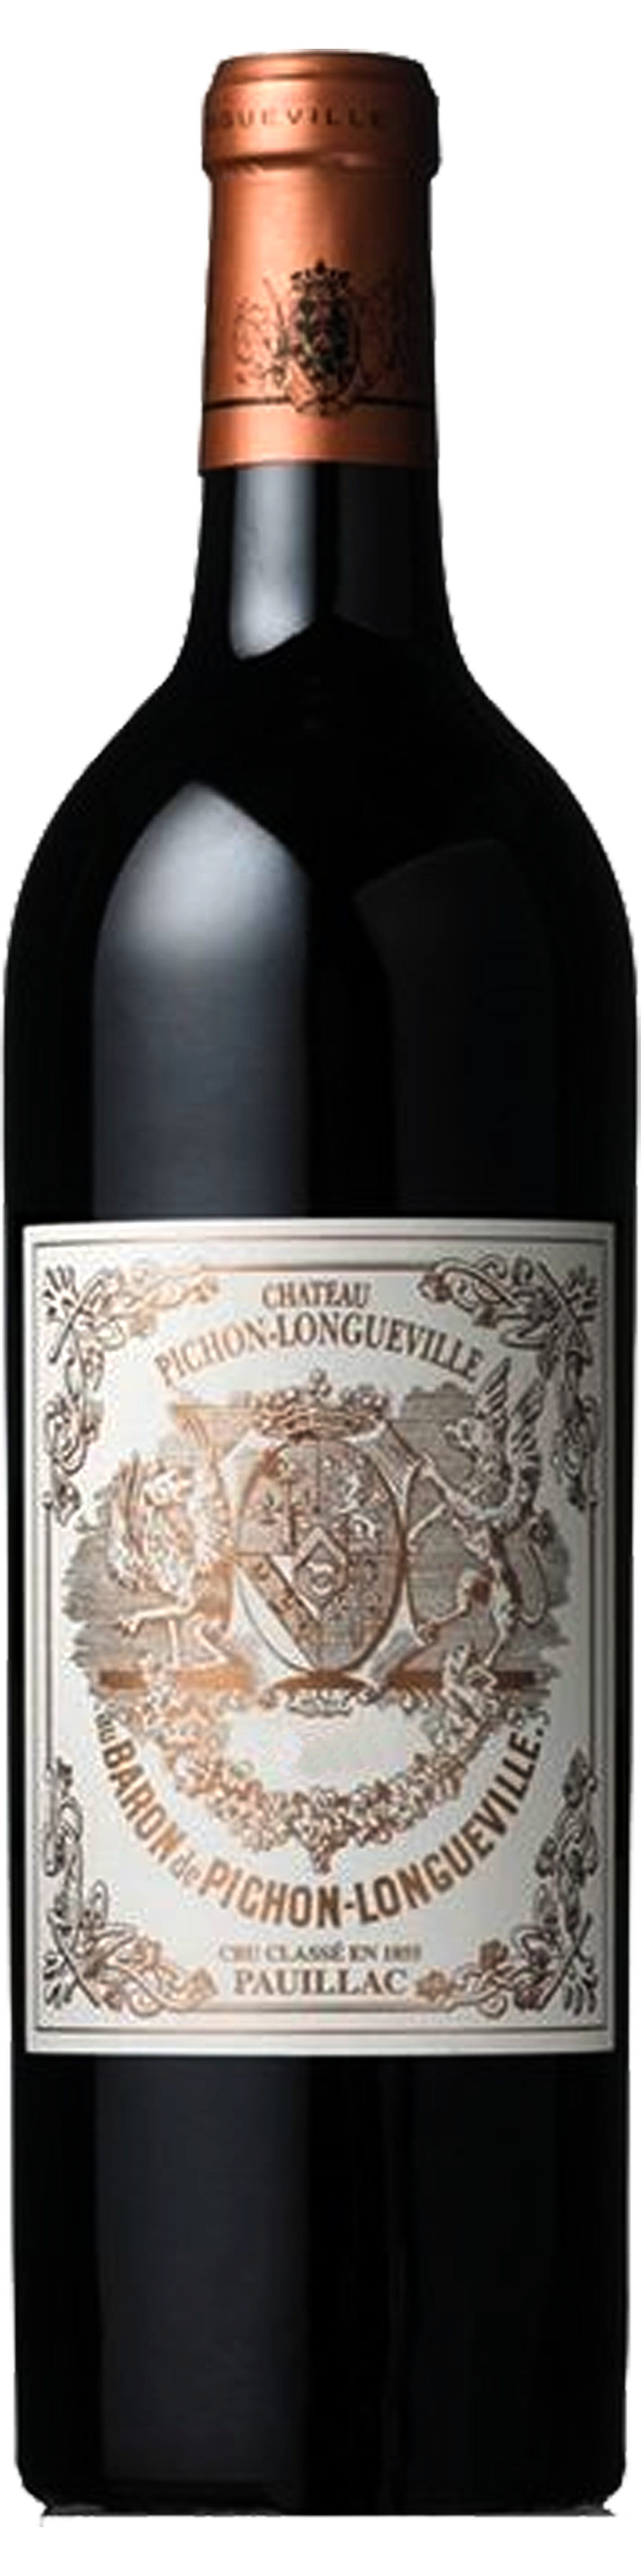 Bottle shot of 2001 Pichon Longueville Baron, 2ème Cru Pauillac